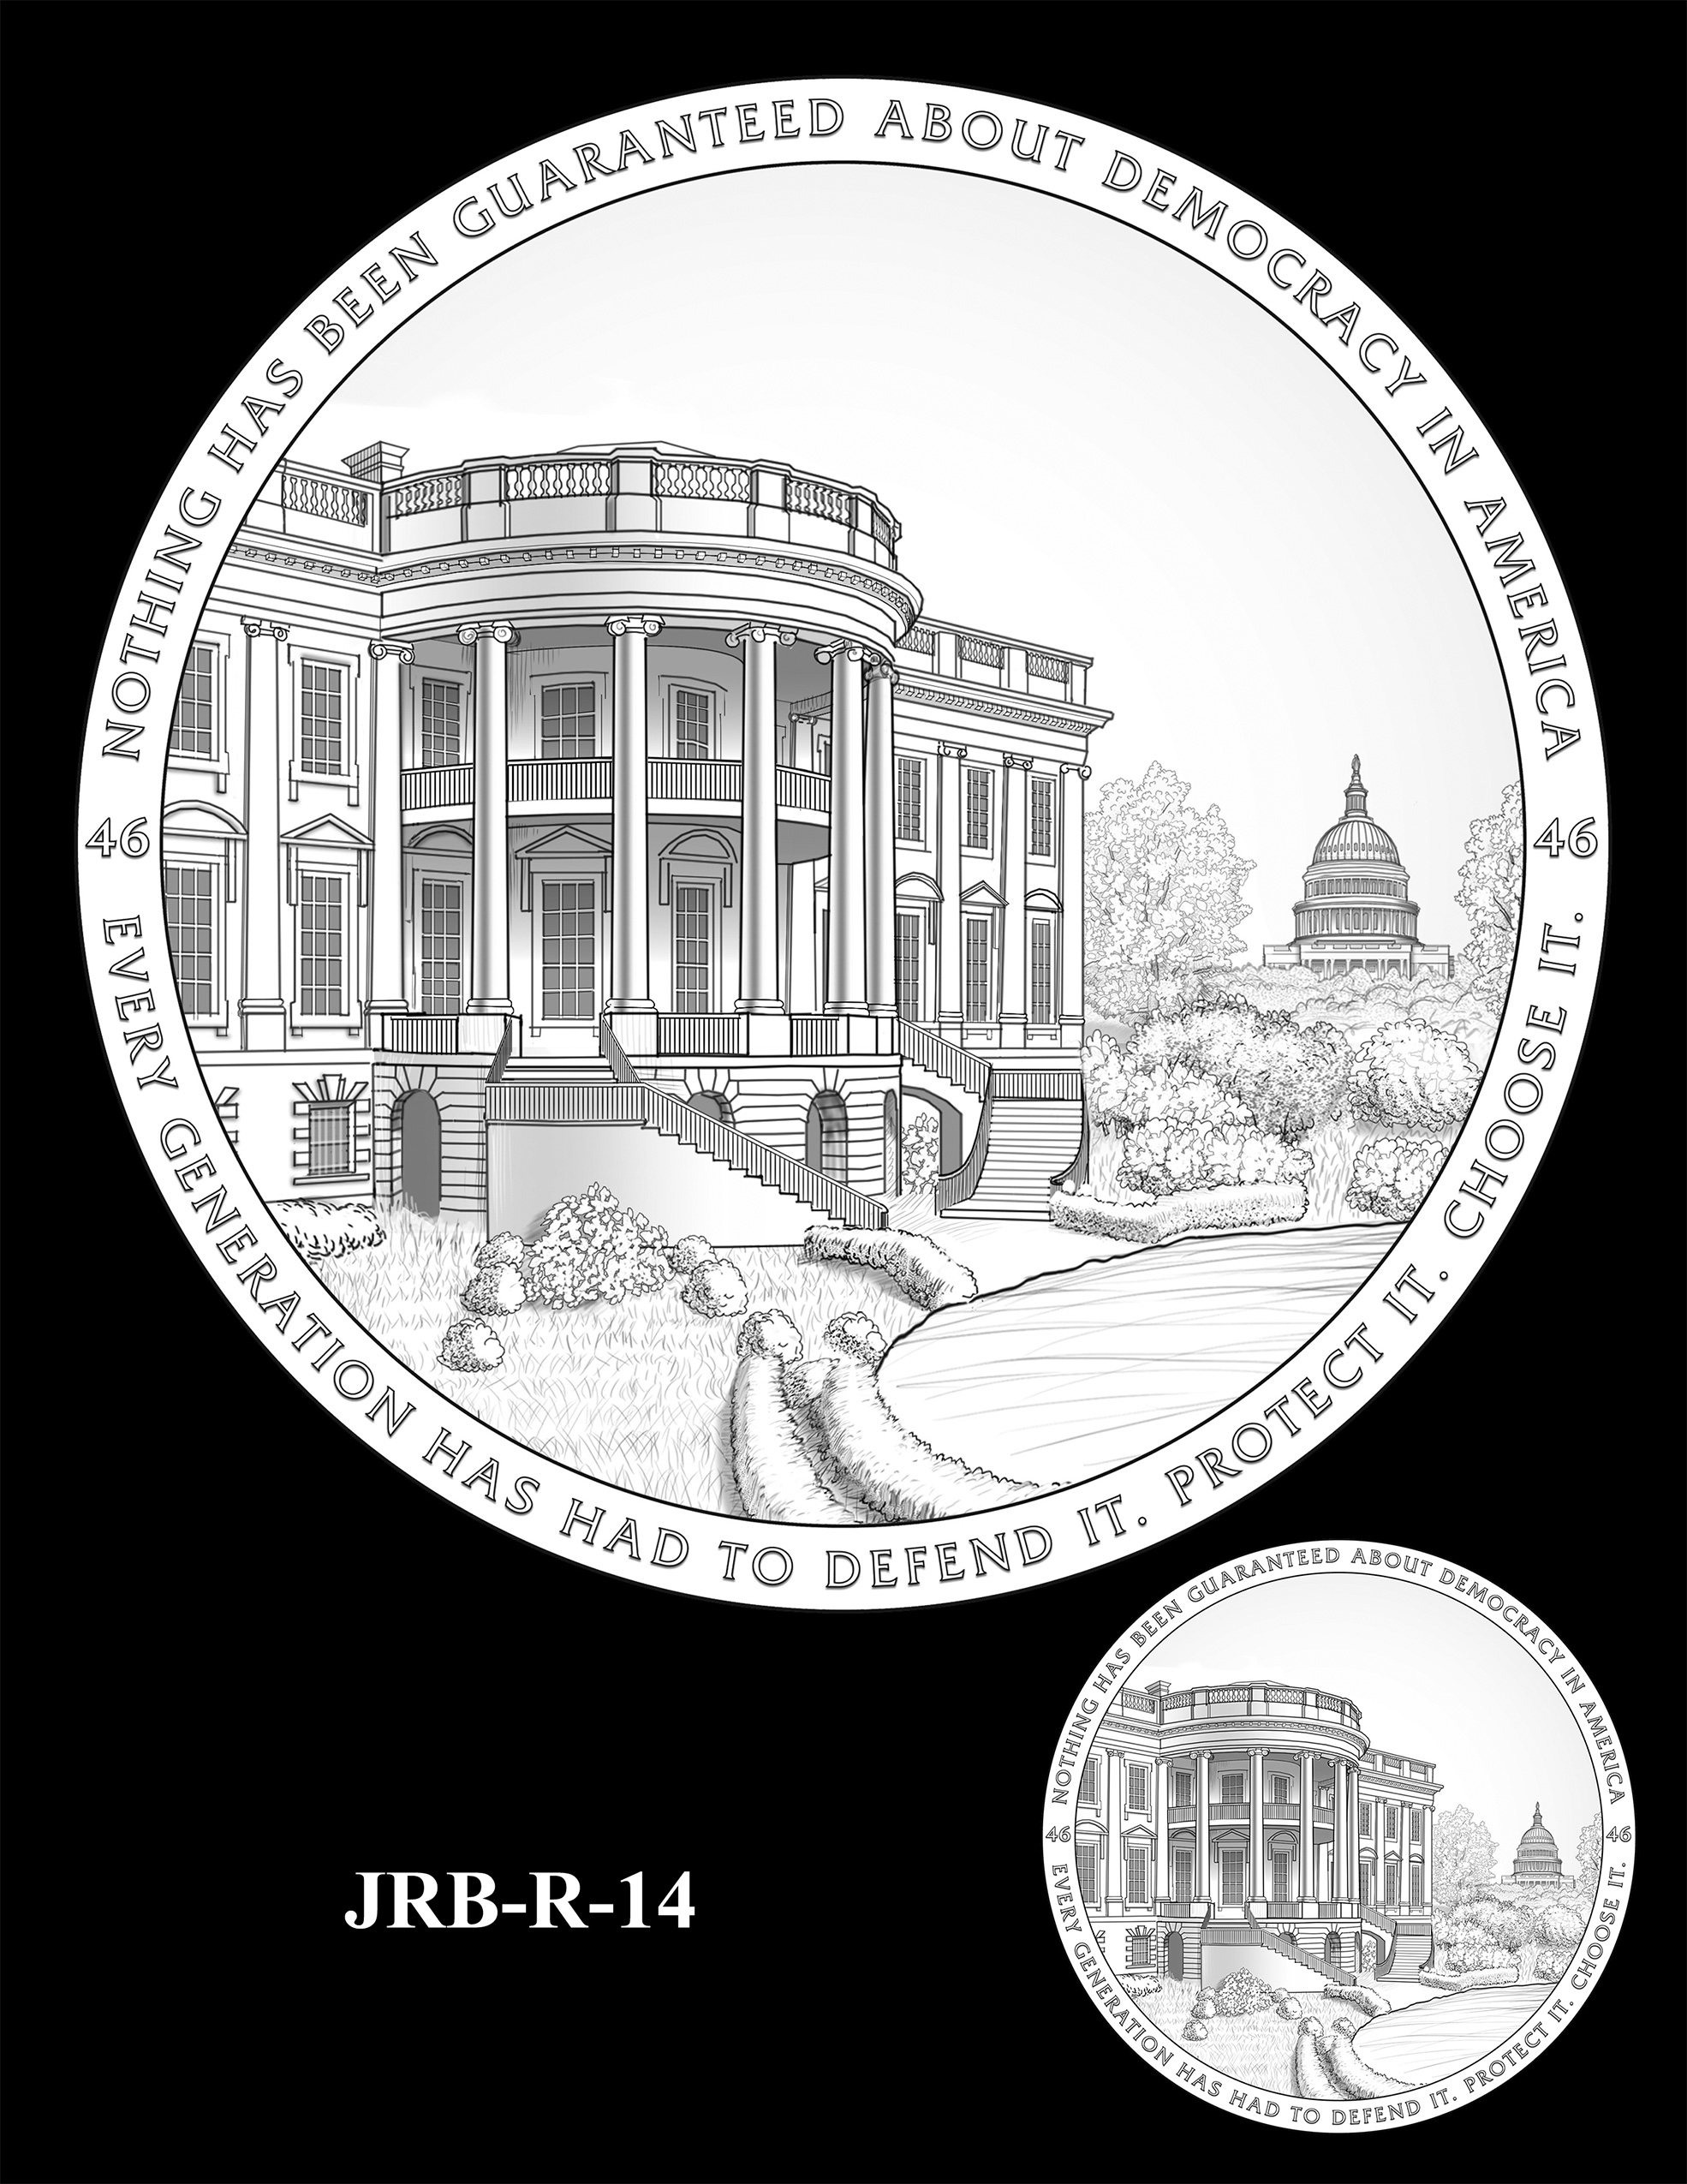 JRB-R-14 -- Joseph R. Biden Jr. Presidential Medal